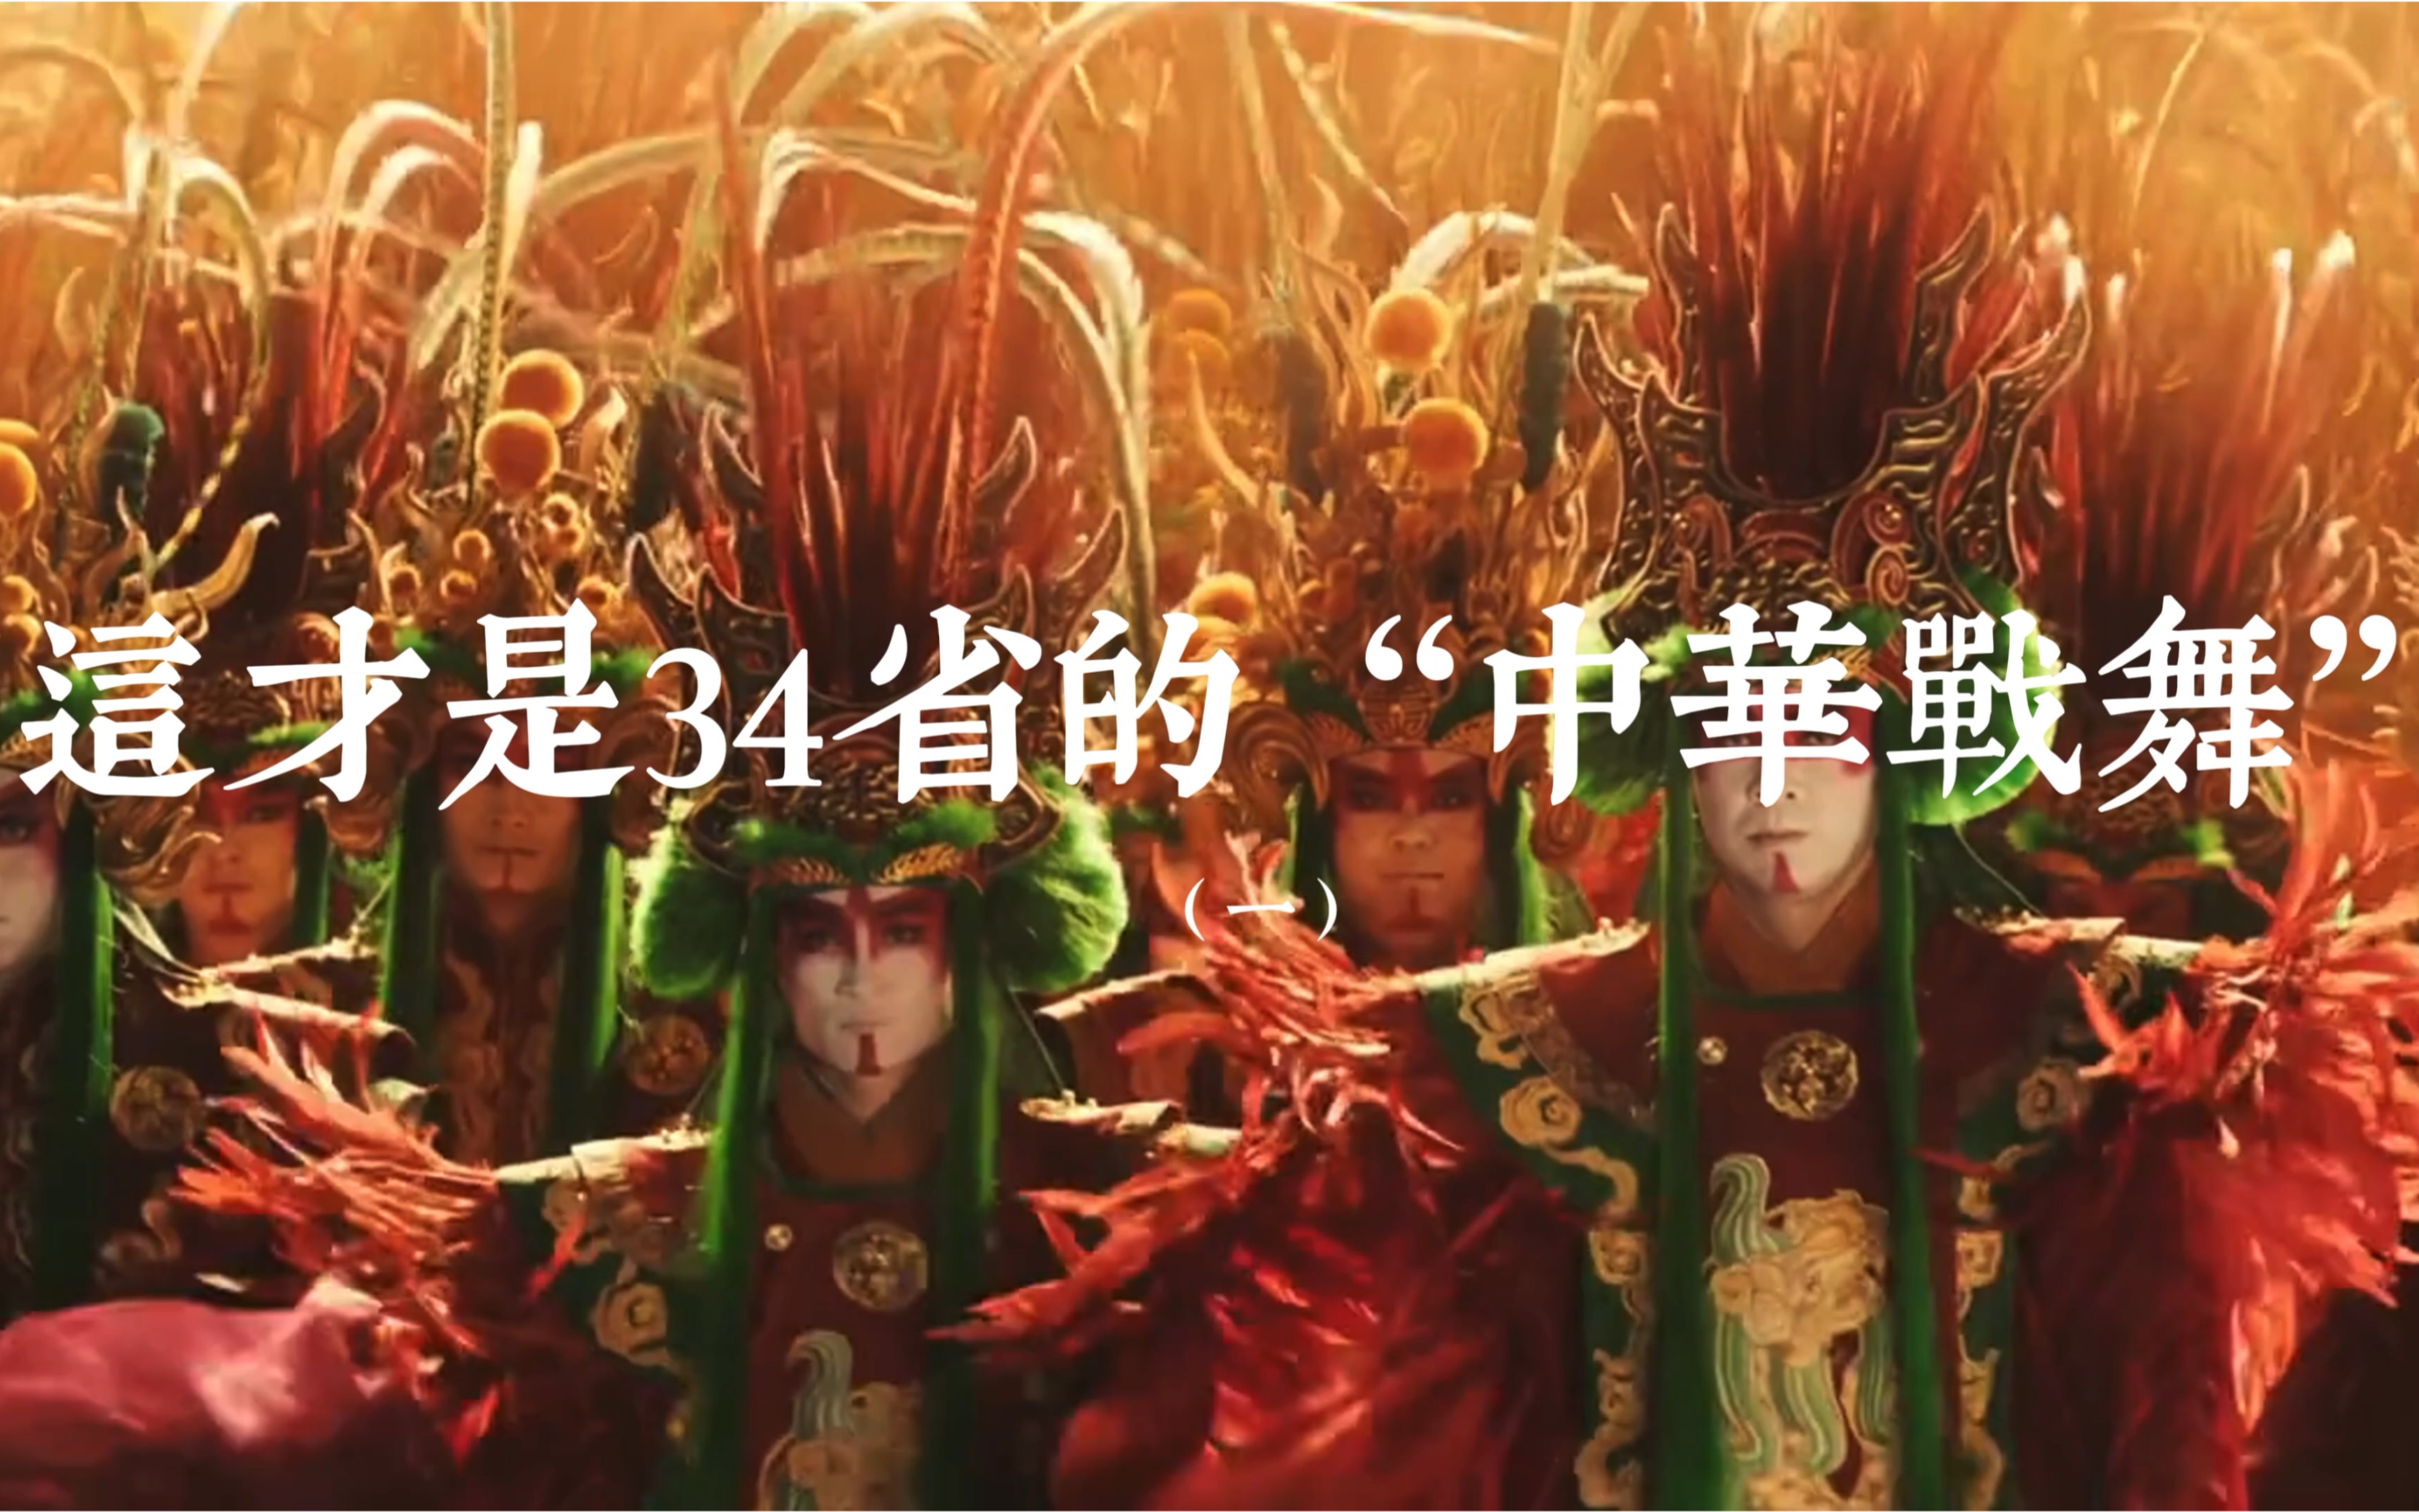 战舞可以是神秘的、热血的、浪漫的、重点是都是中国的！感谢非遗人的坚持传承